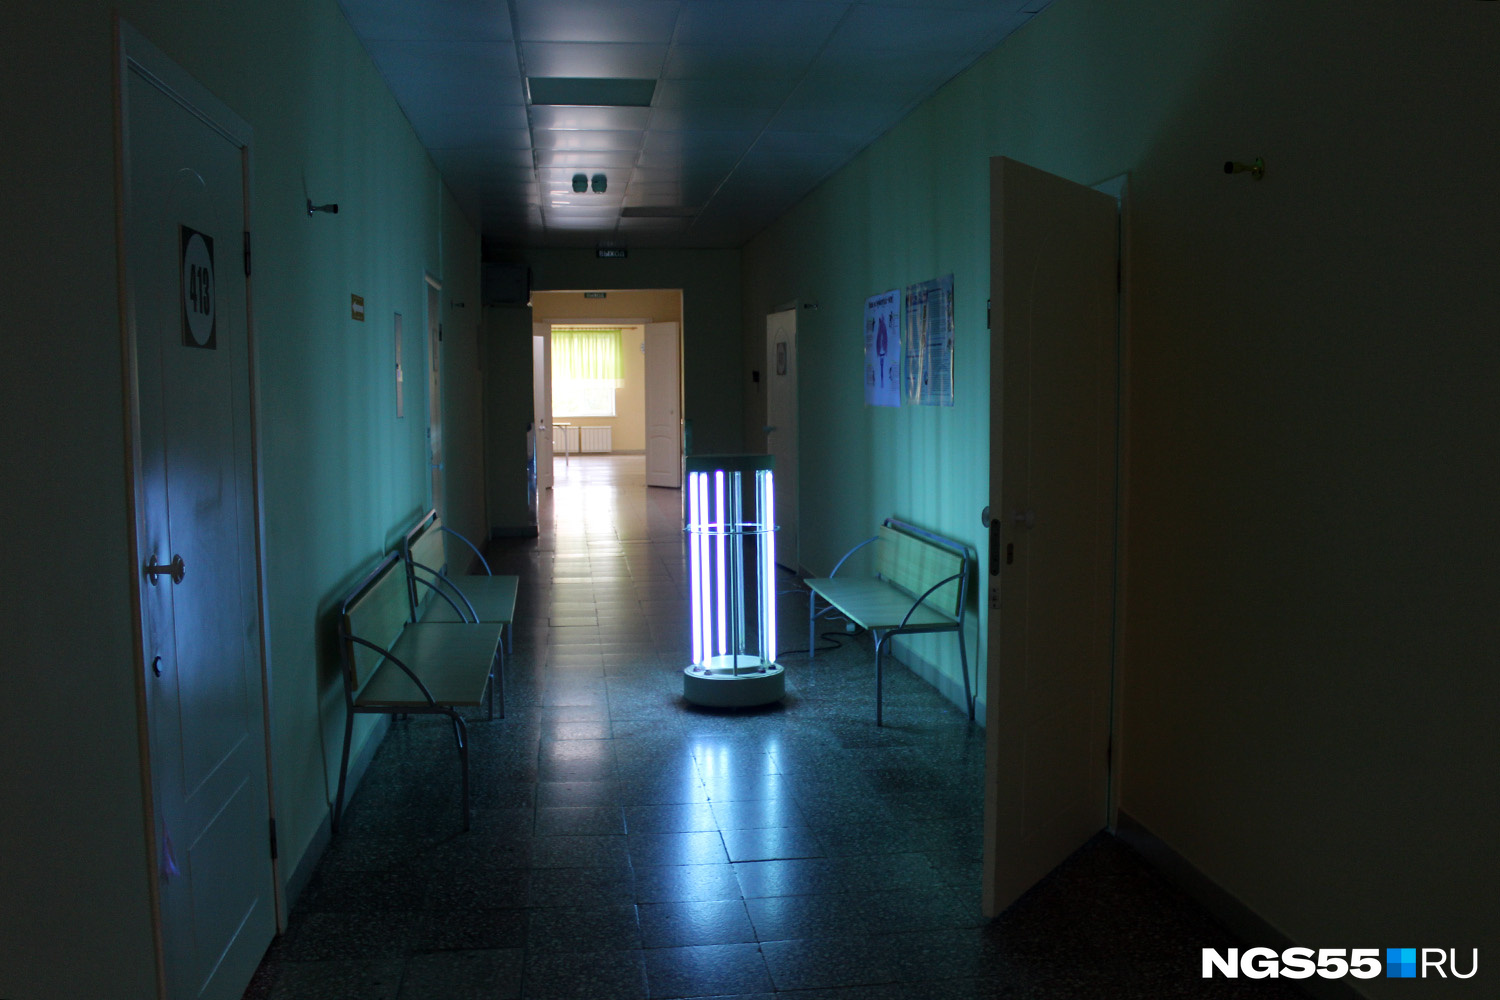 Пока пациенты отдыхают, в коридоре стоит кварцевая лампа. Смотреть на неё нельзя